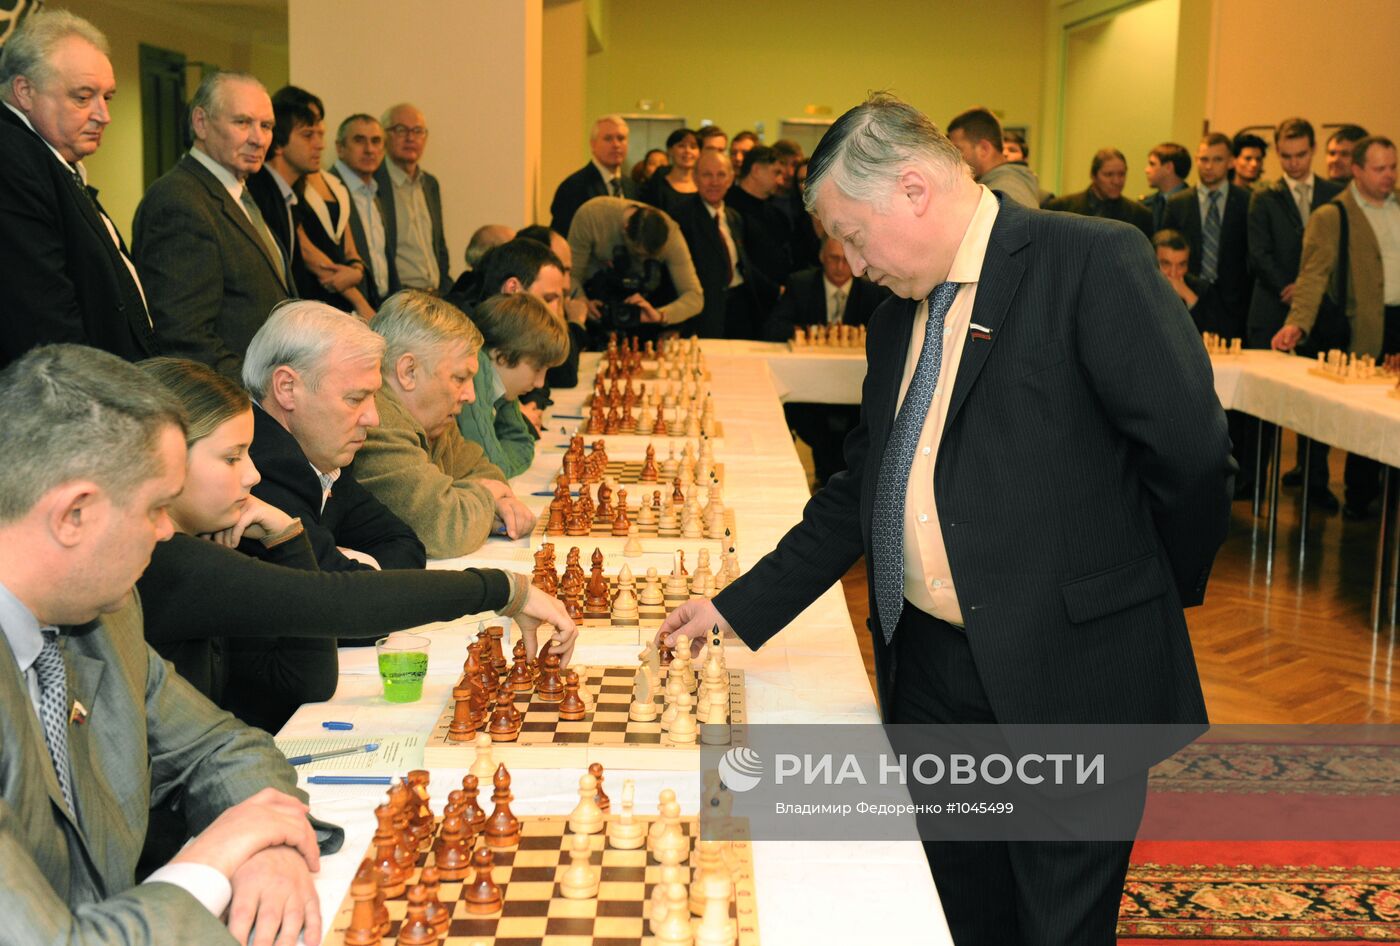 Сеанс одновременной игры в шахматы Анатолия Карпова